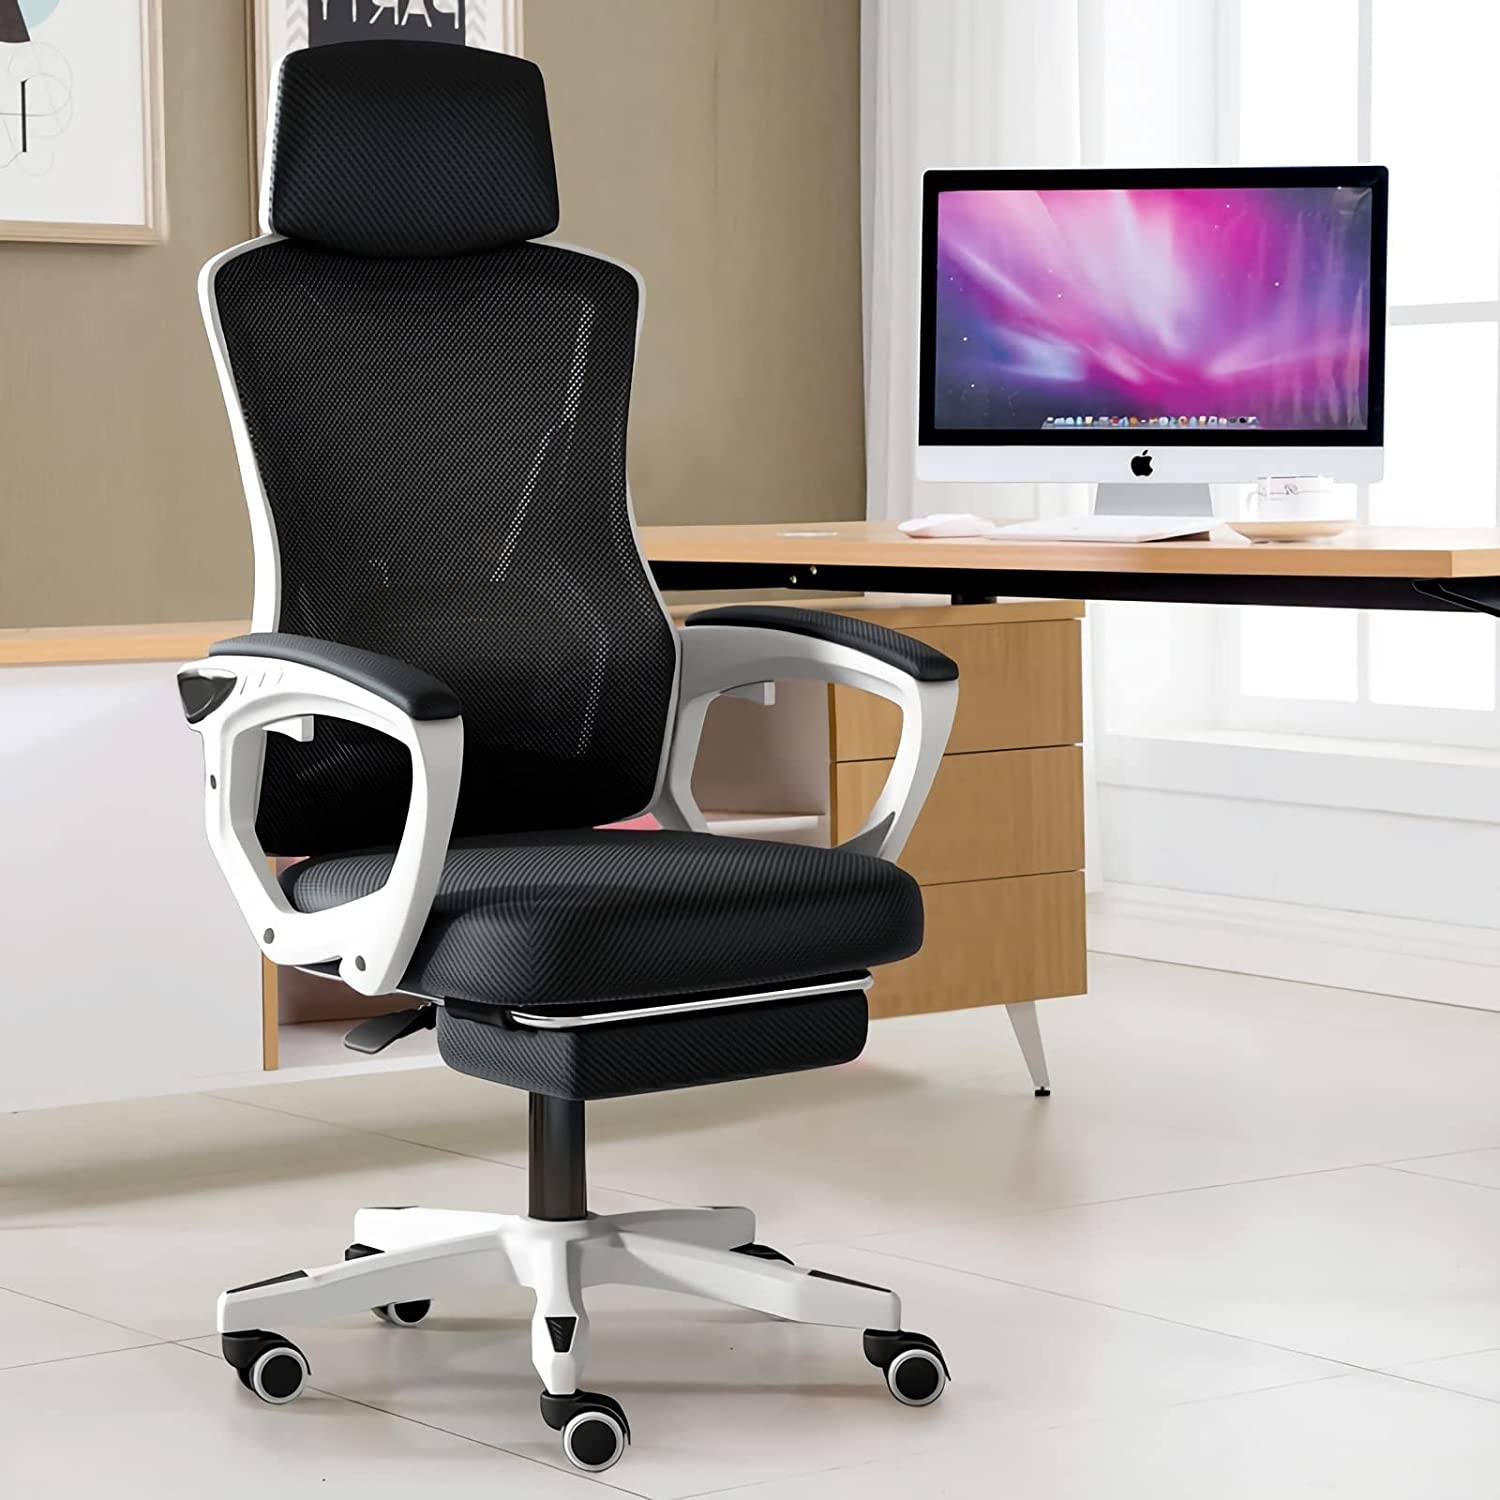 Supsea オフィスチェア 椅子 テレワーク 疲れない デスクチェア ワーク